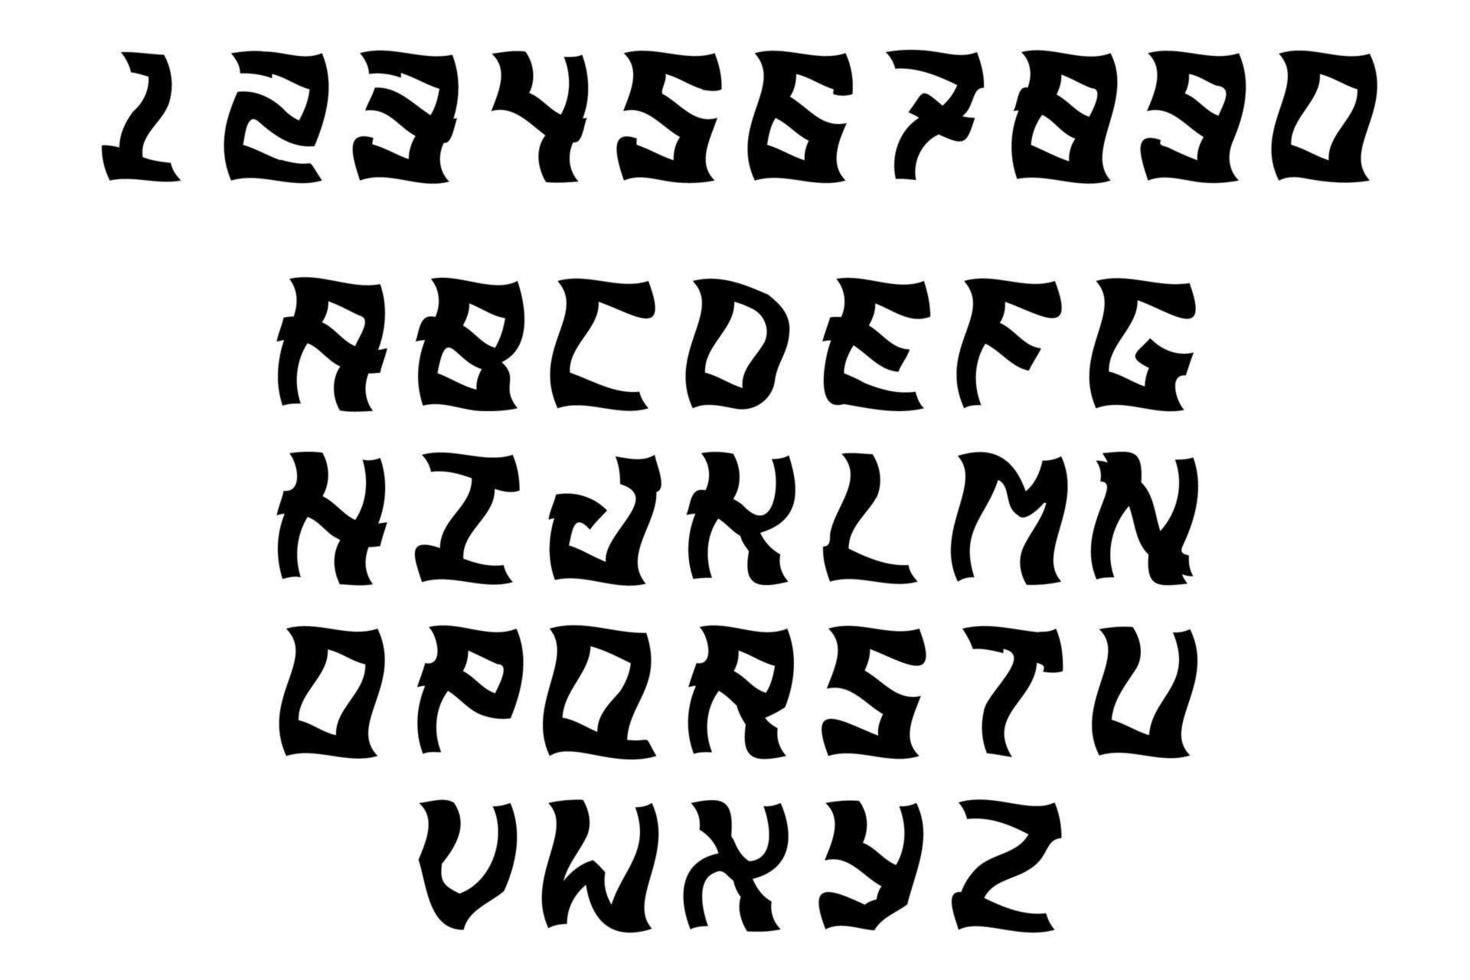 zwarte en witte hoofdletters. letters en cijfers in zwarte kleur geïsoleerd op een witte achtergrond. eng lettertypeontwerp. vector